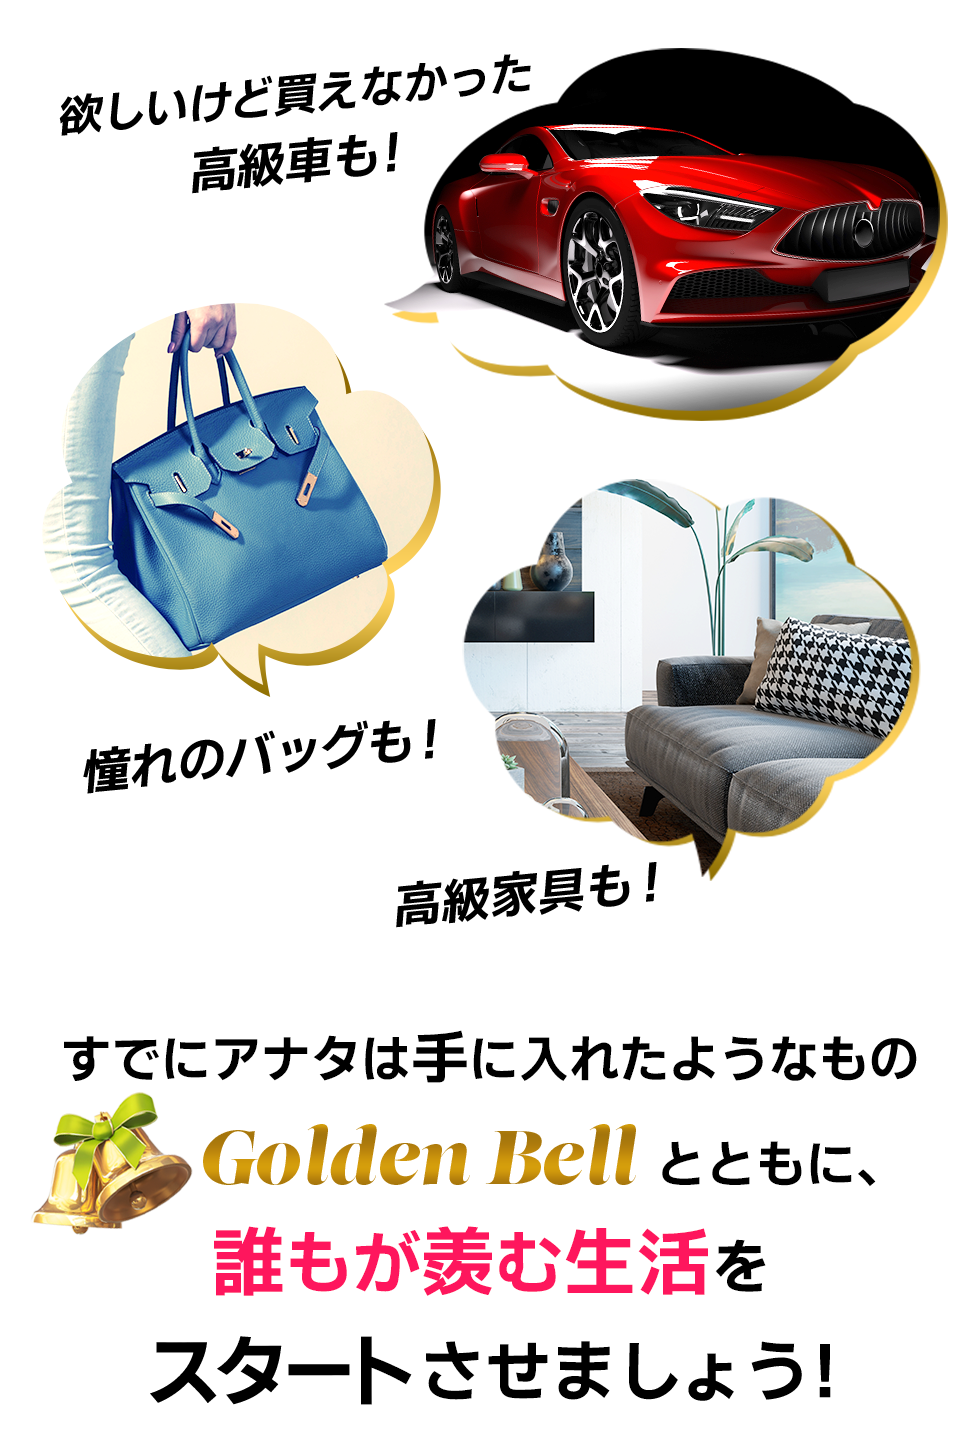 Golden Bellとともに、誰もが羨む生活をスタートさせましょう！